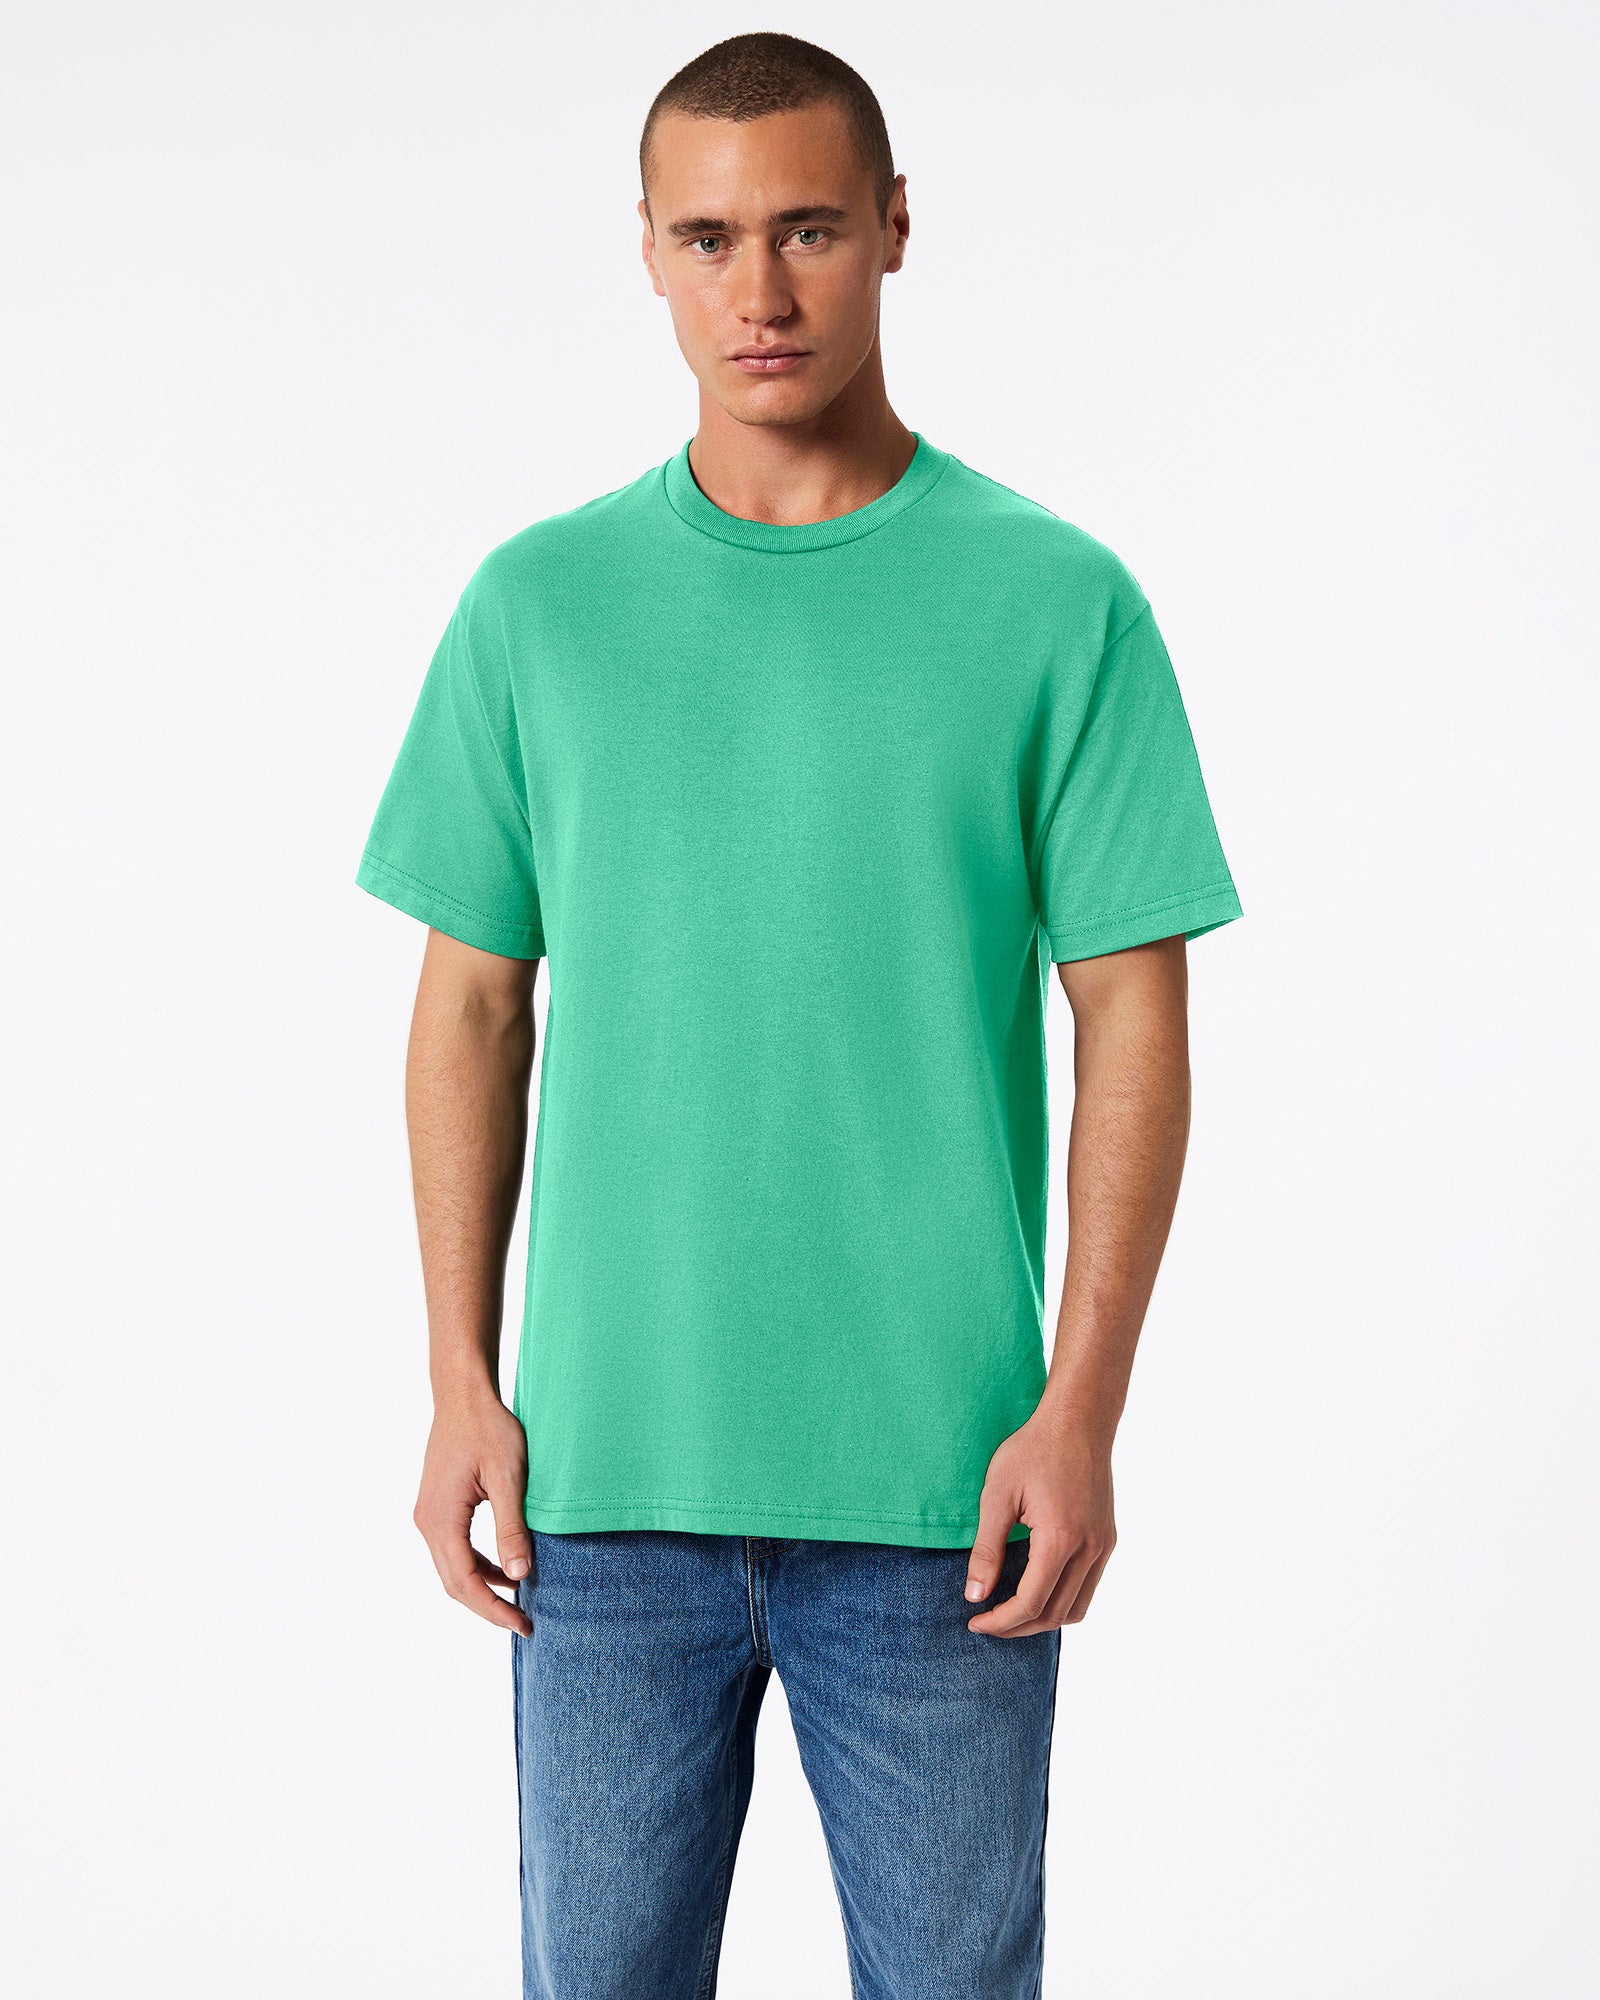 Heavyweight Unisex T-Shirt - Celadon